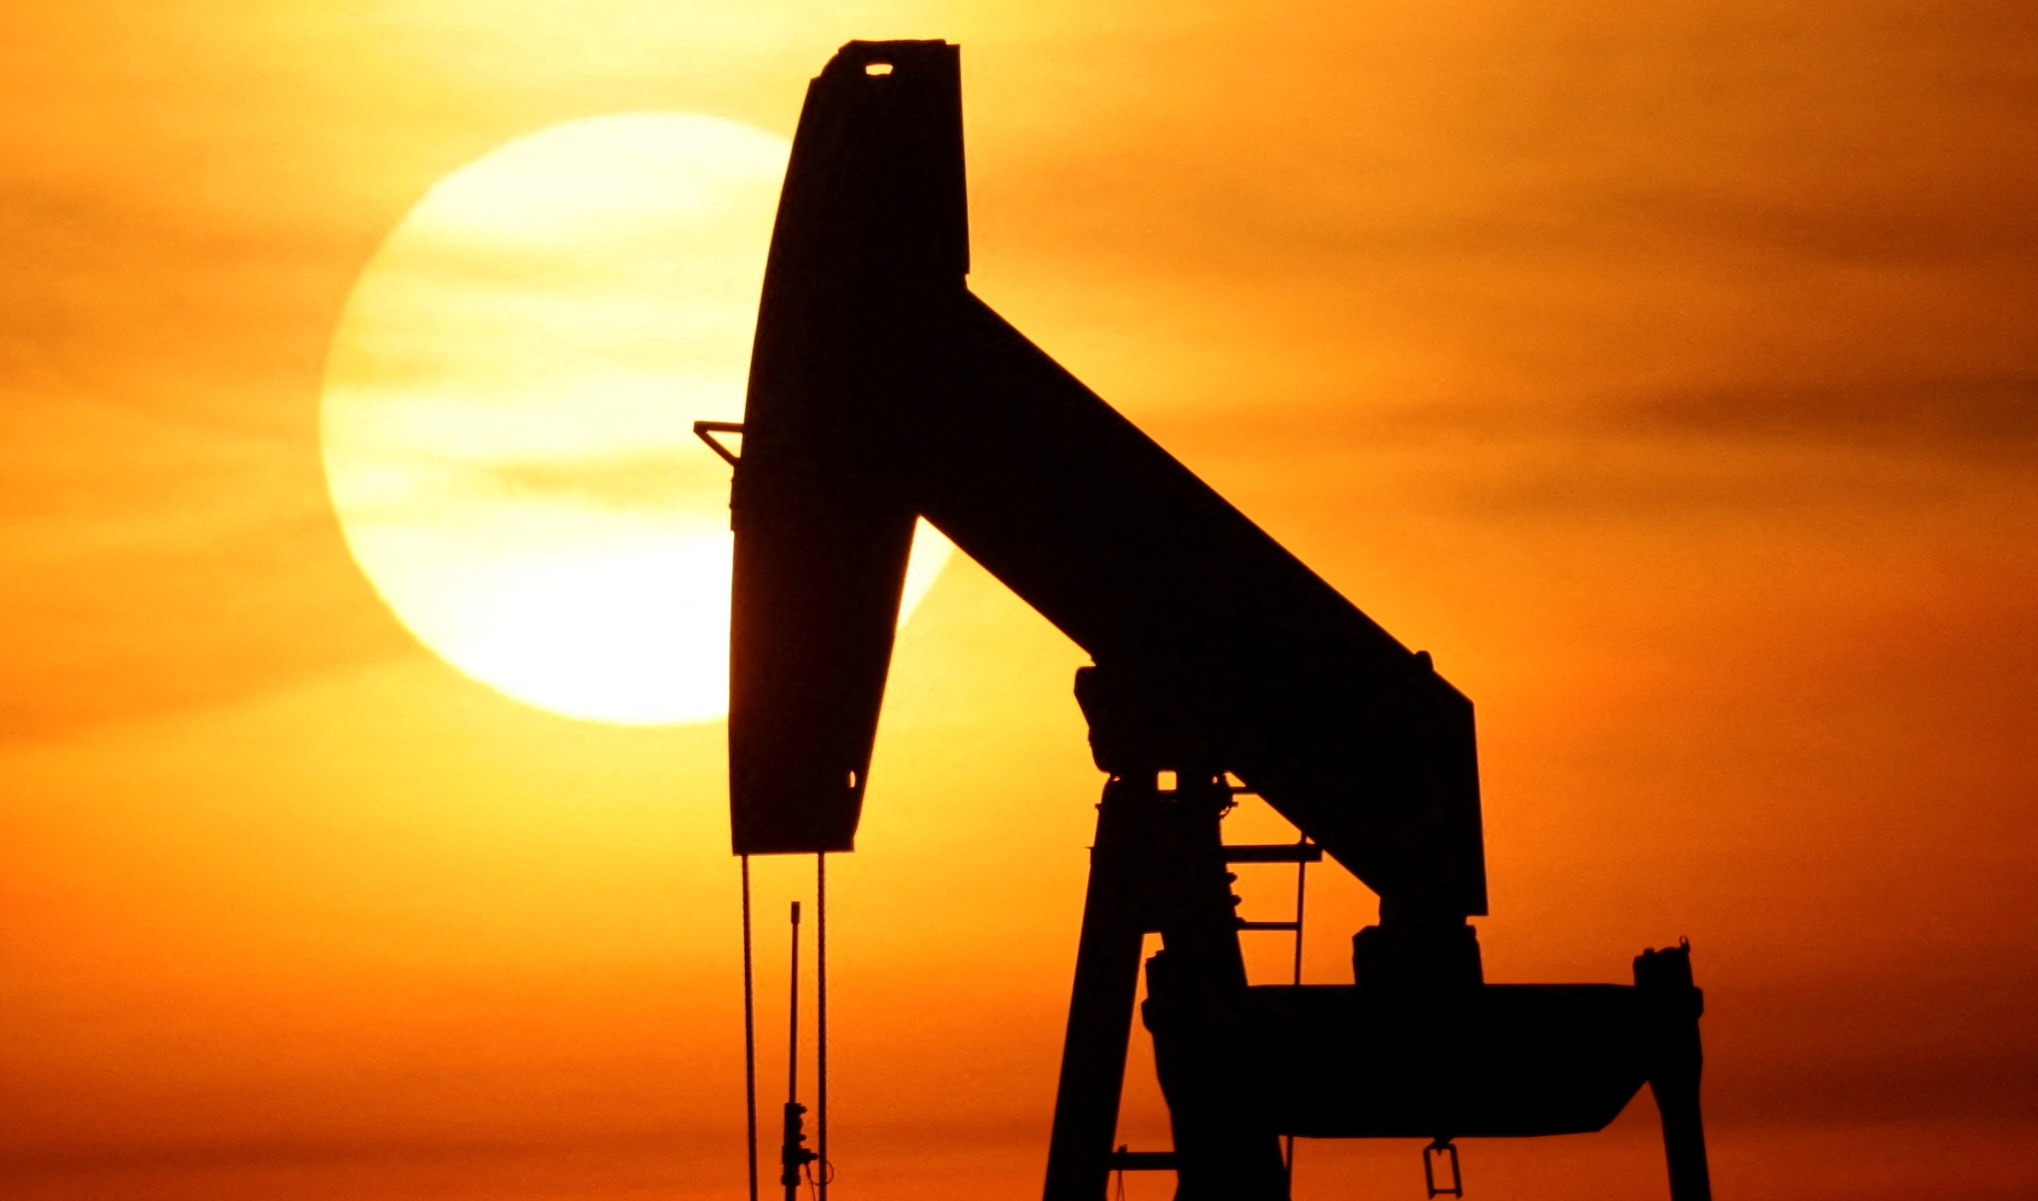 Γερμανία: Τέλος στην εισαγωγή πετρελαίου από τη Ρωσία μέχρι το τέλος του χρόνου